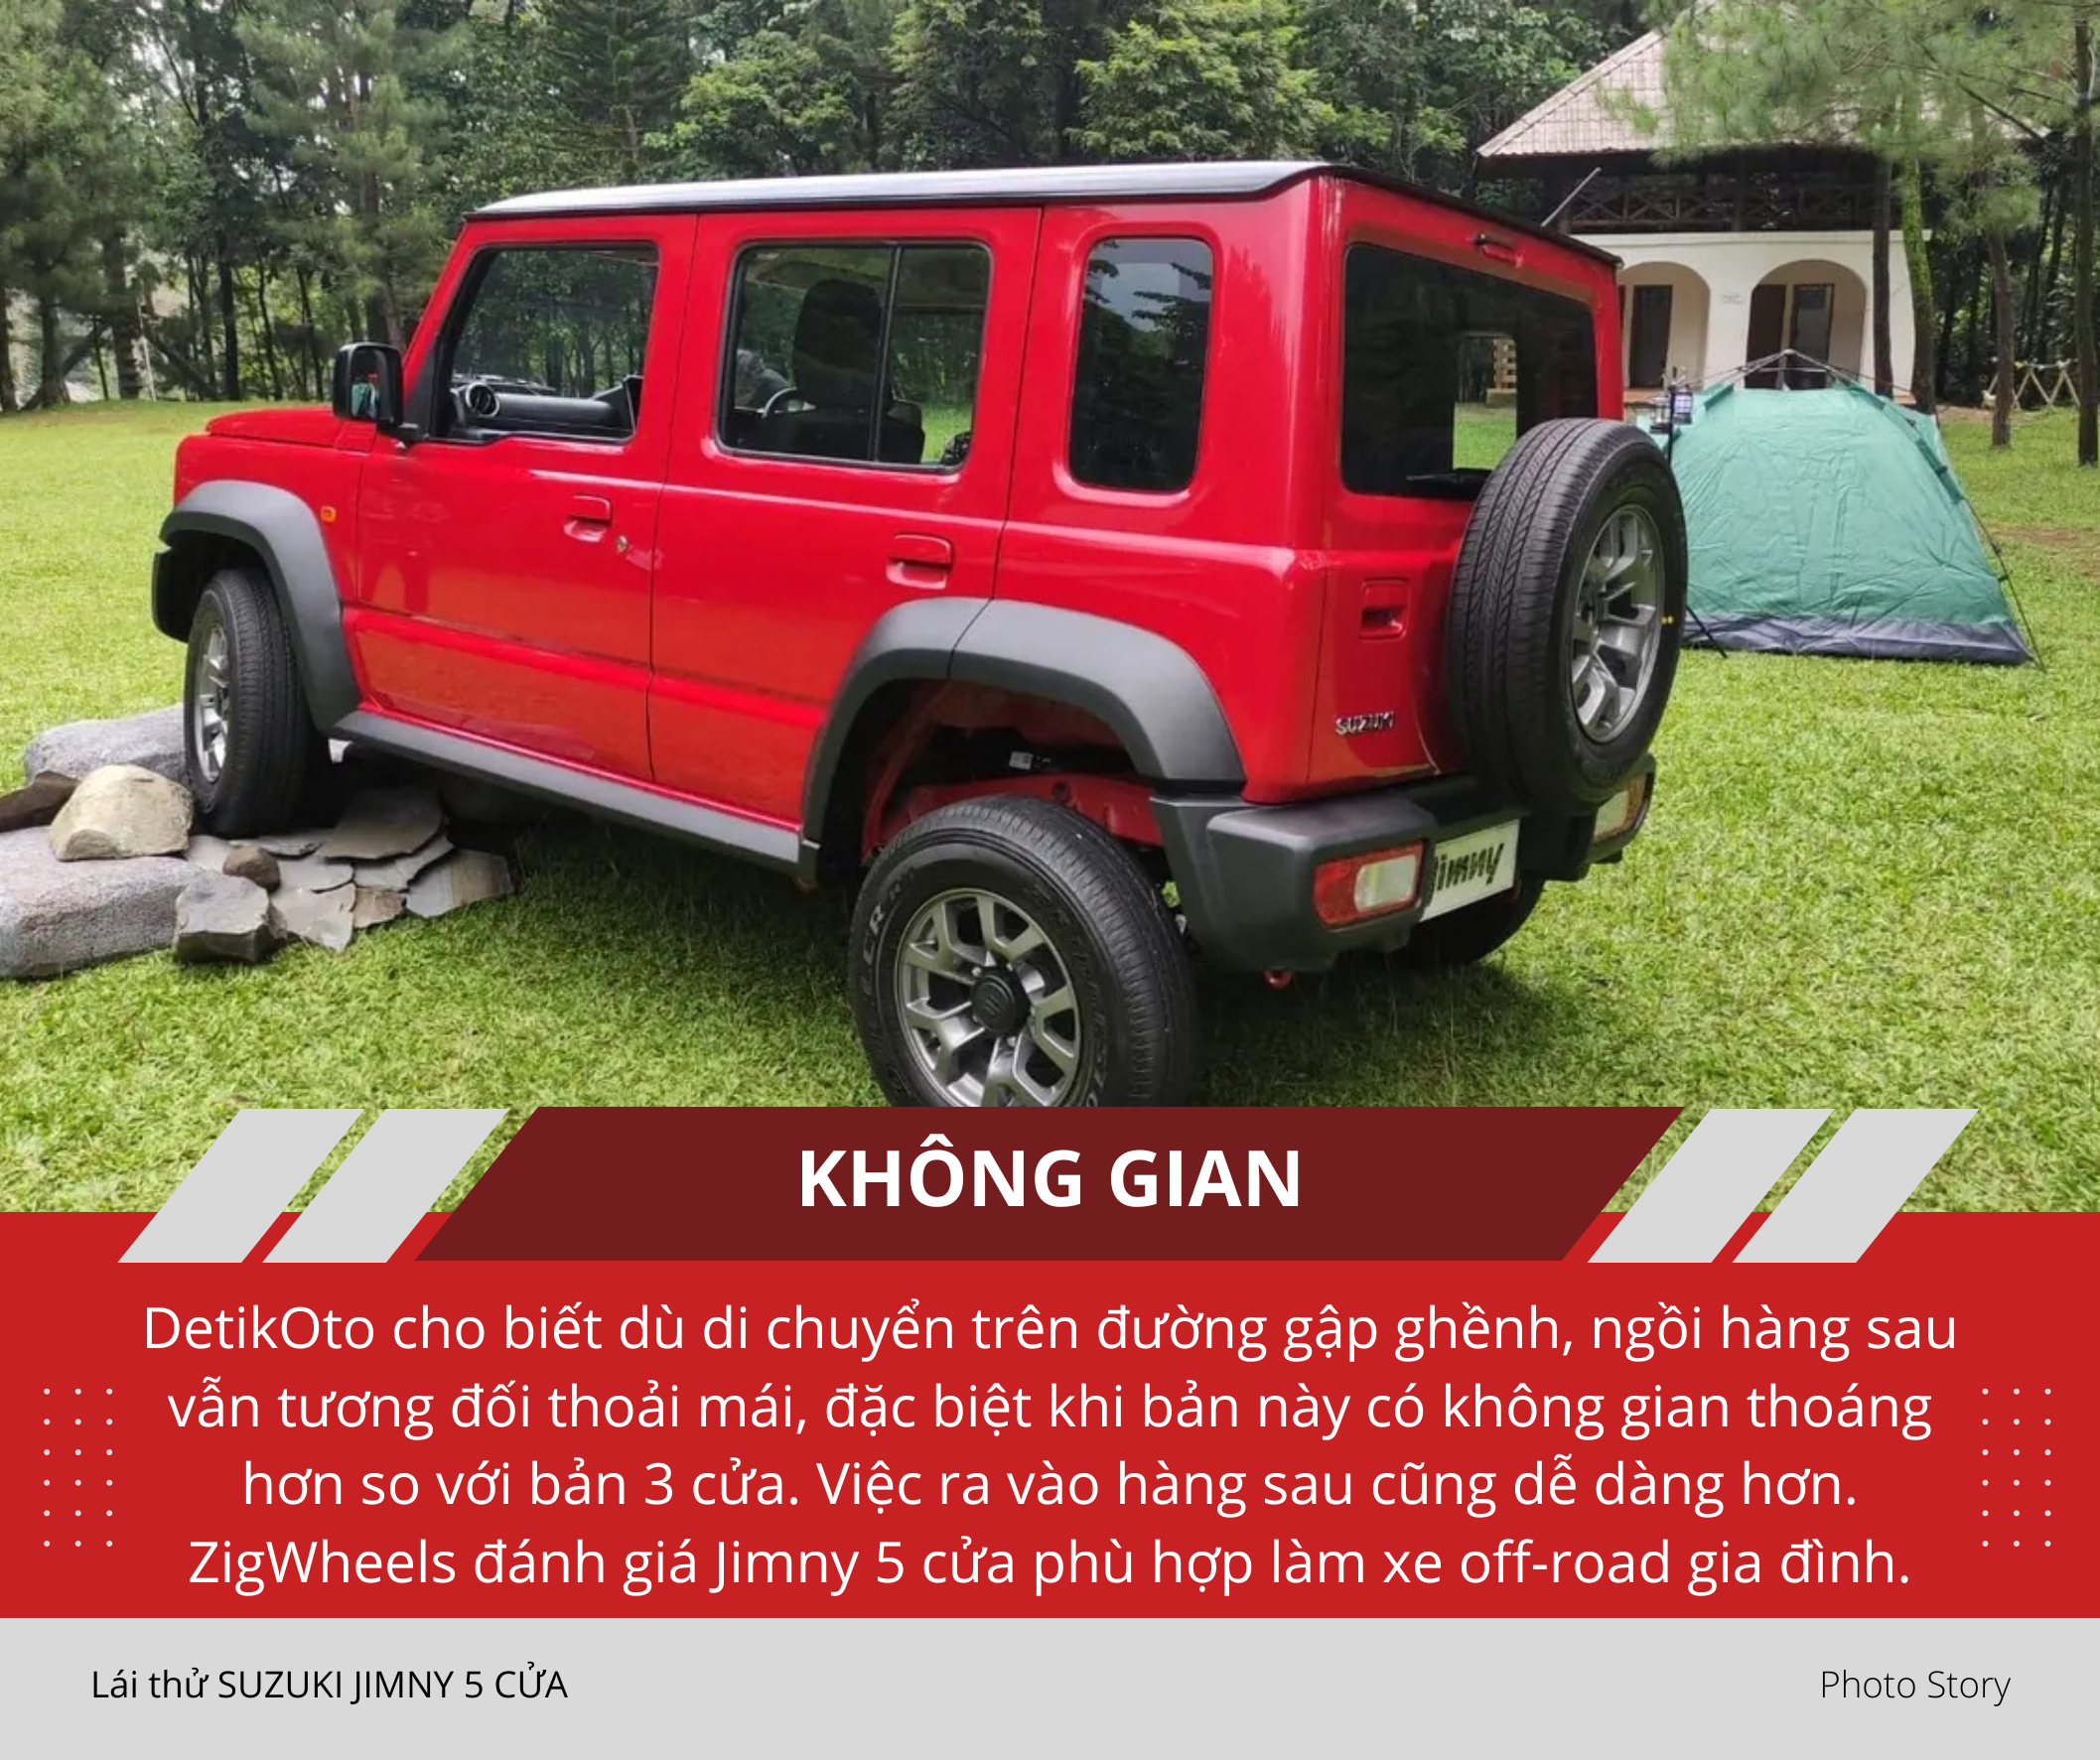 Mang Suzuki Jimny 5 cửa vào rừng 'hành hạ': Nhiều điểm hơn hẳn bản 3 cửa sắp ra mắt Việt Nam, thoải mái cho cả nhà cùng off-road - Ảnh 12.